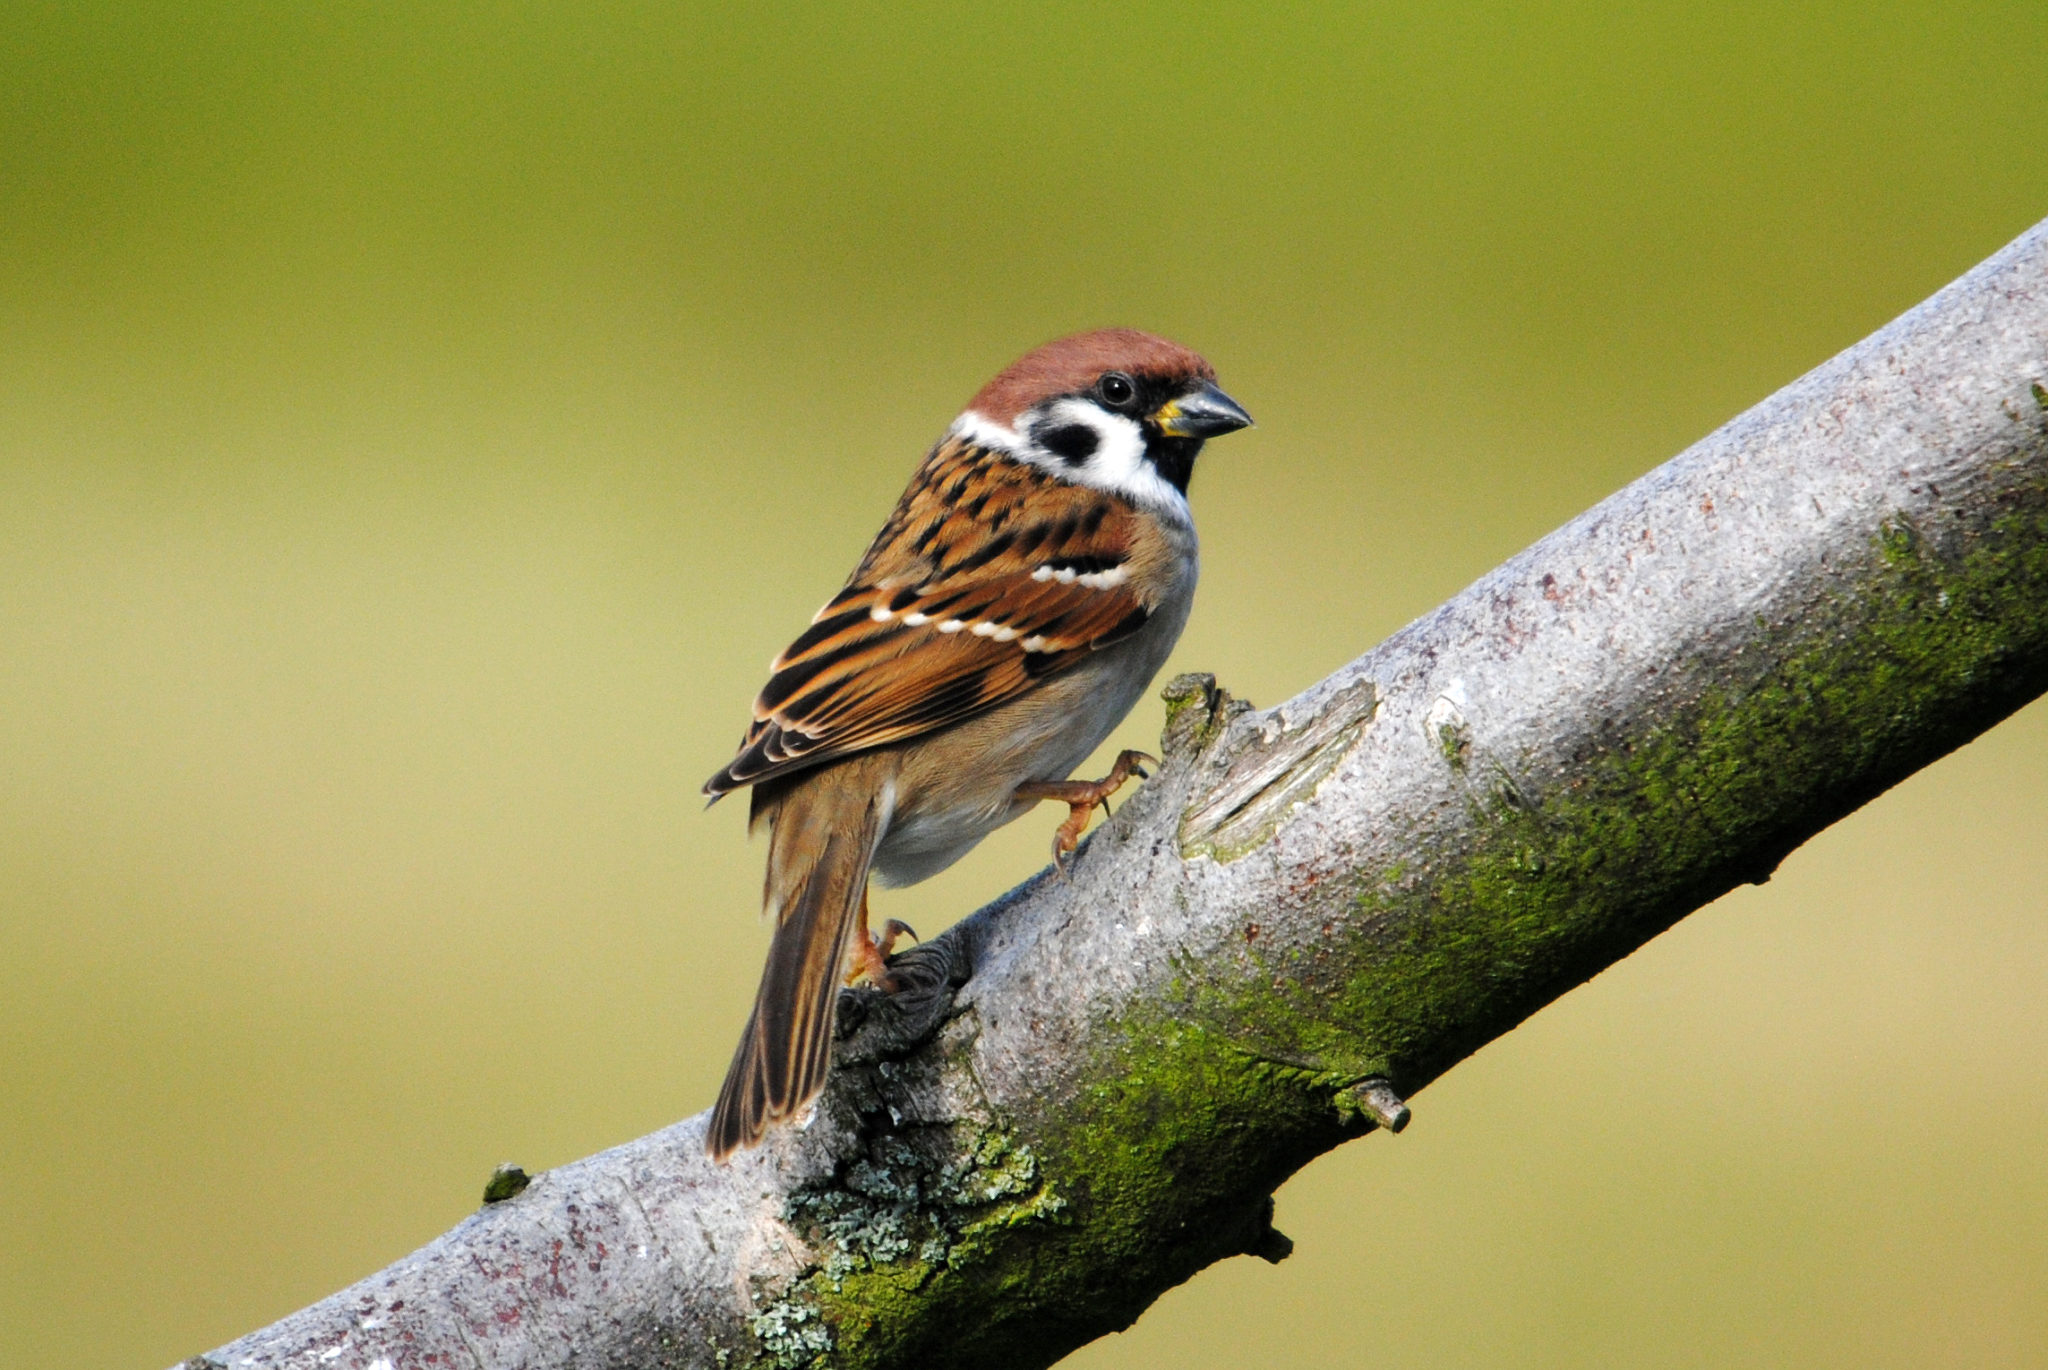 the sparrow